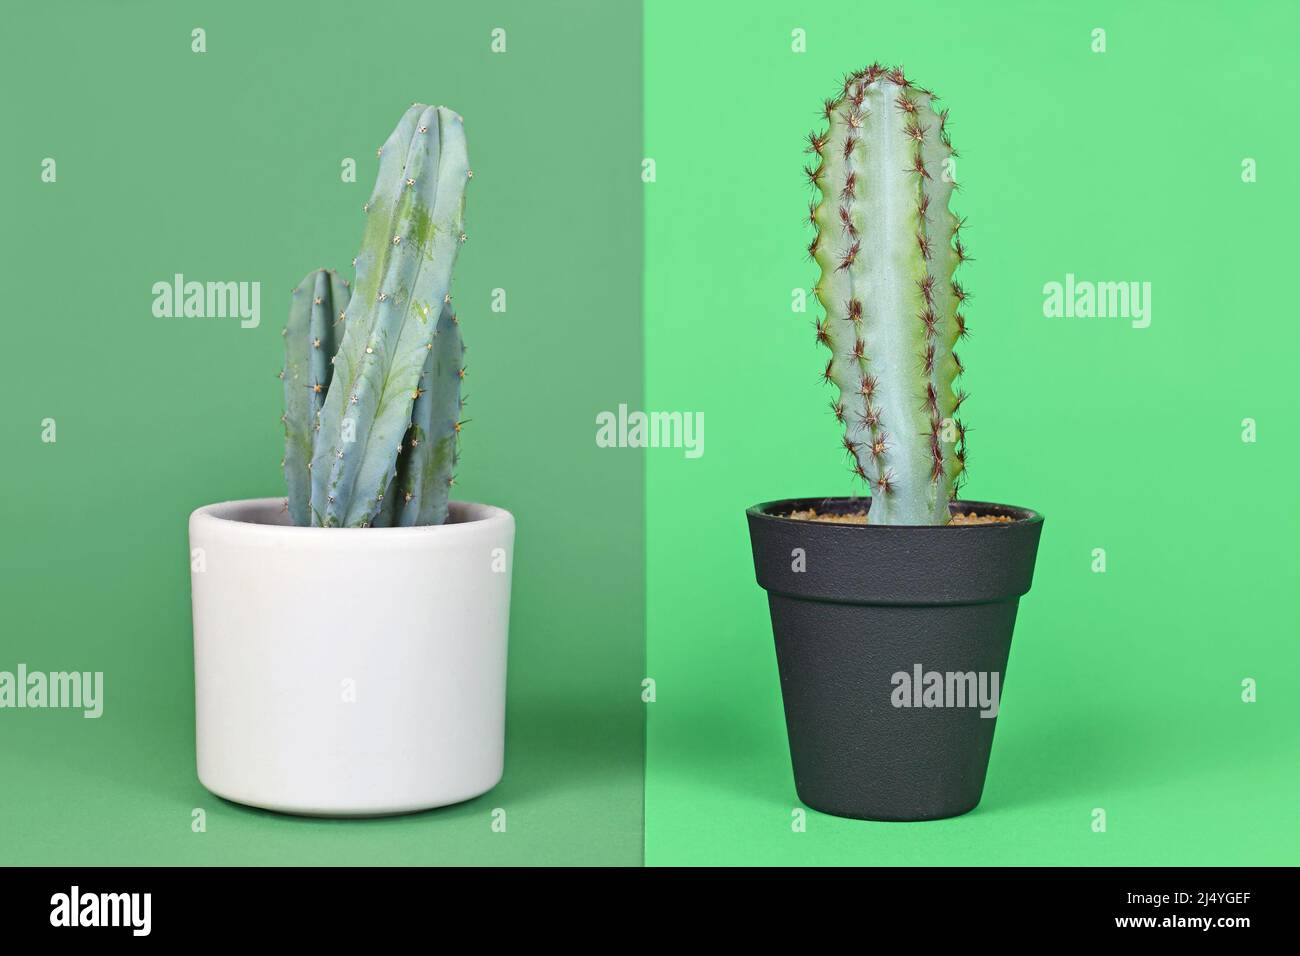 Comparaison entre la plante réelle et fausse. Myrtillocactus naturel en pot Cactus à côté de la plante en plastique Banque D'Images